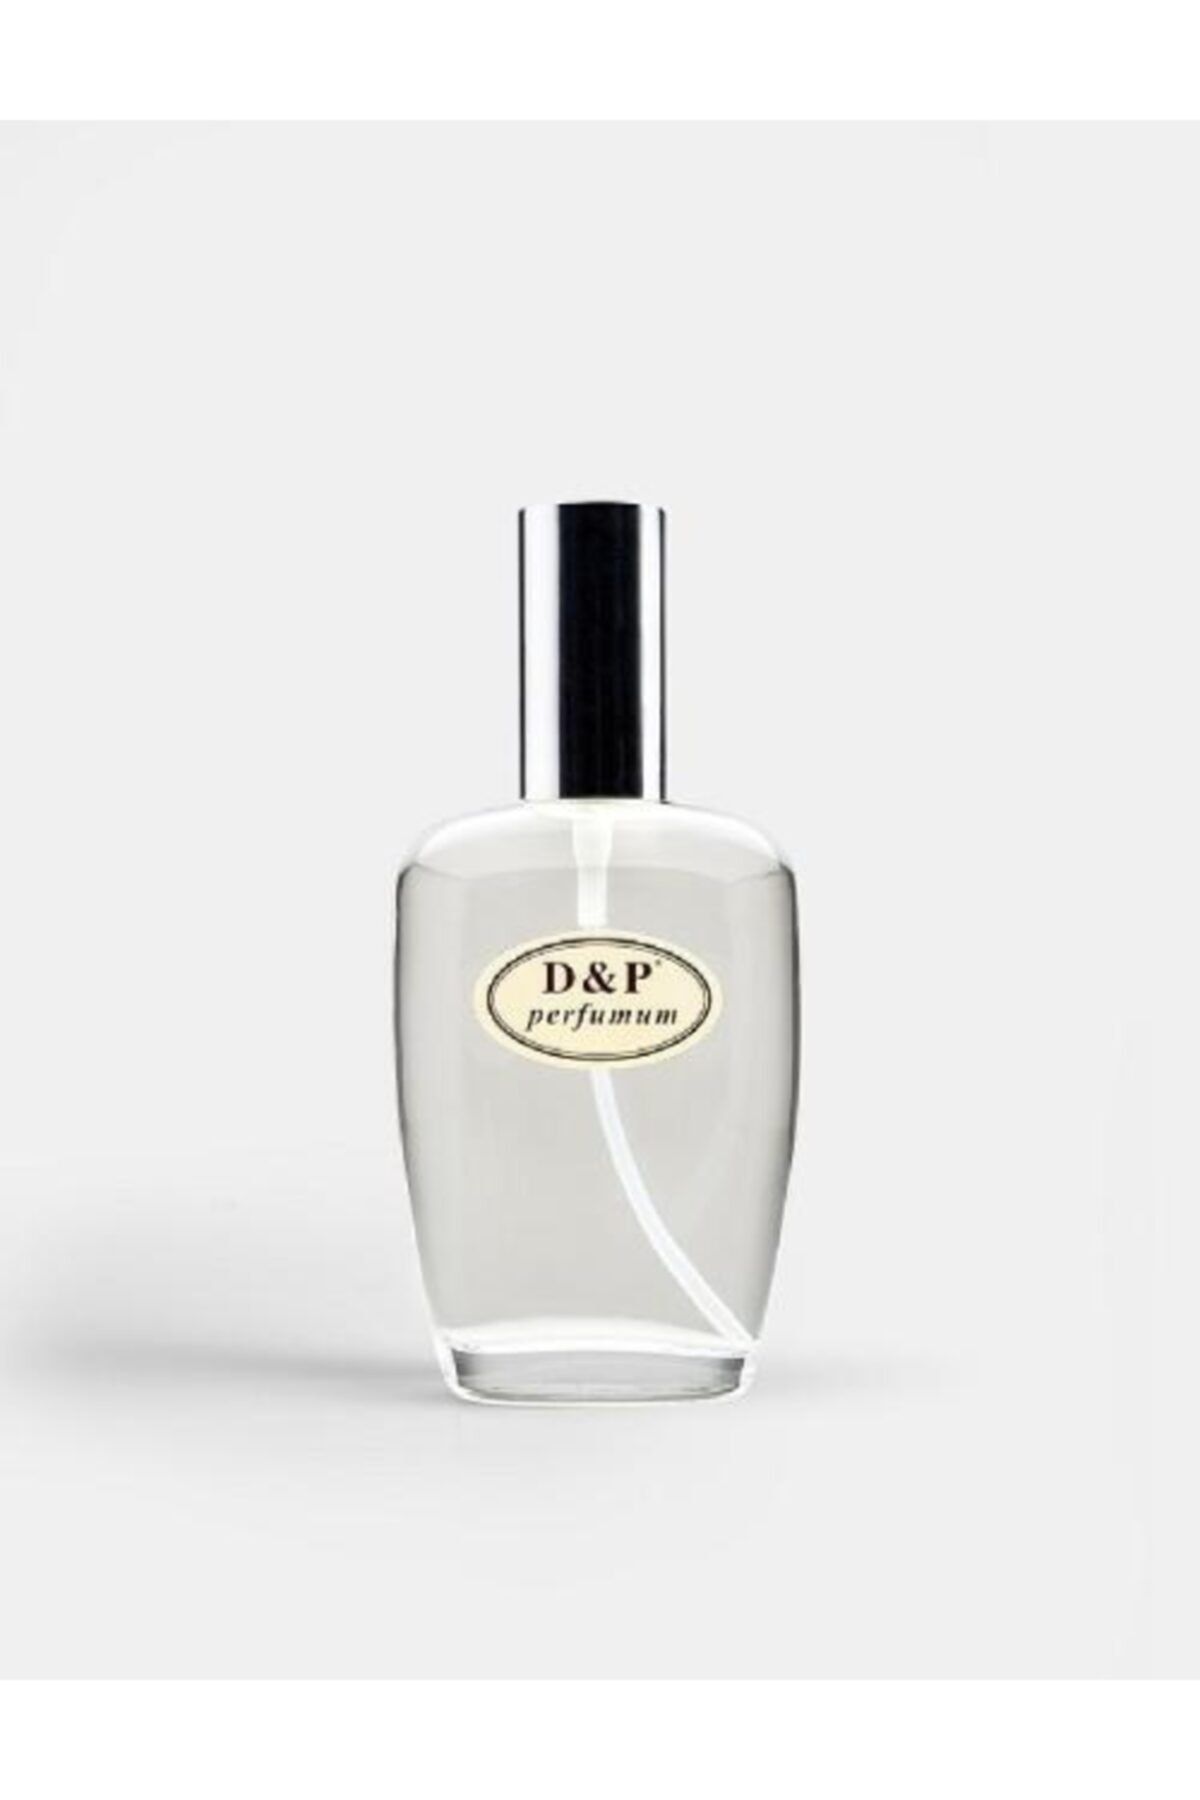 D&P Perfumum H9 Erkek Parfüm Edp 50 ml